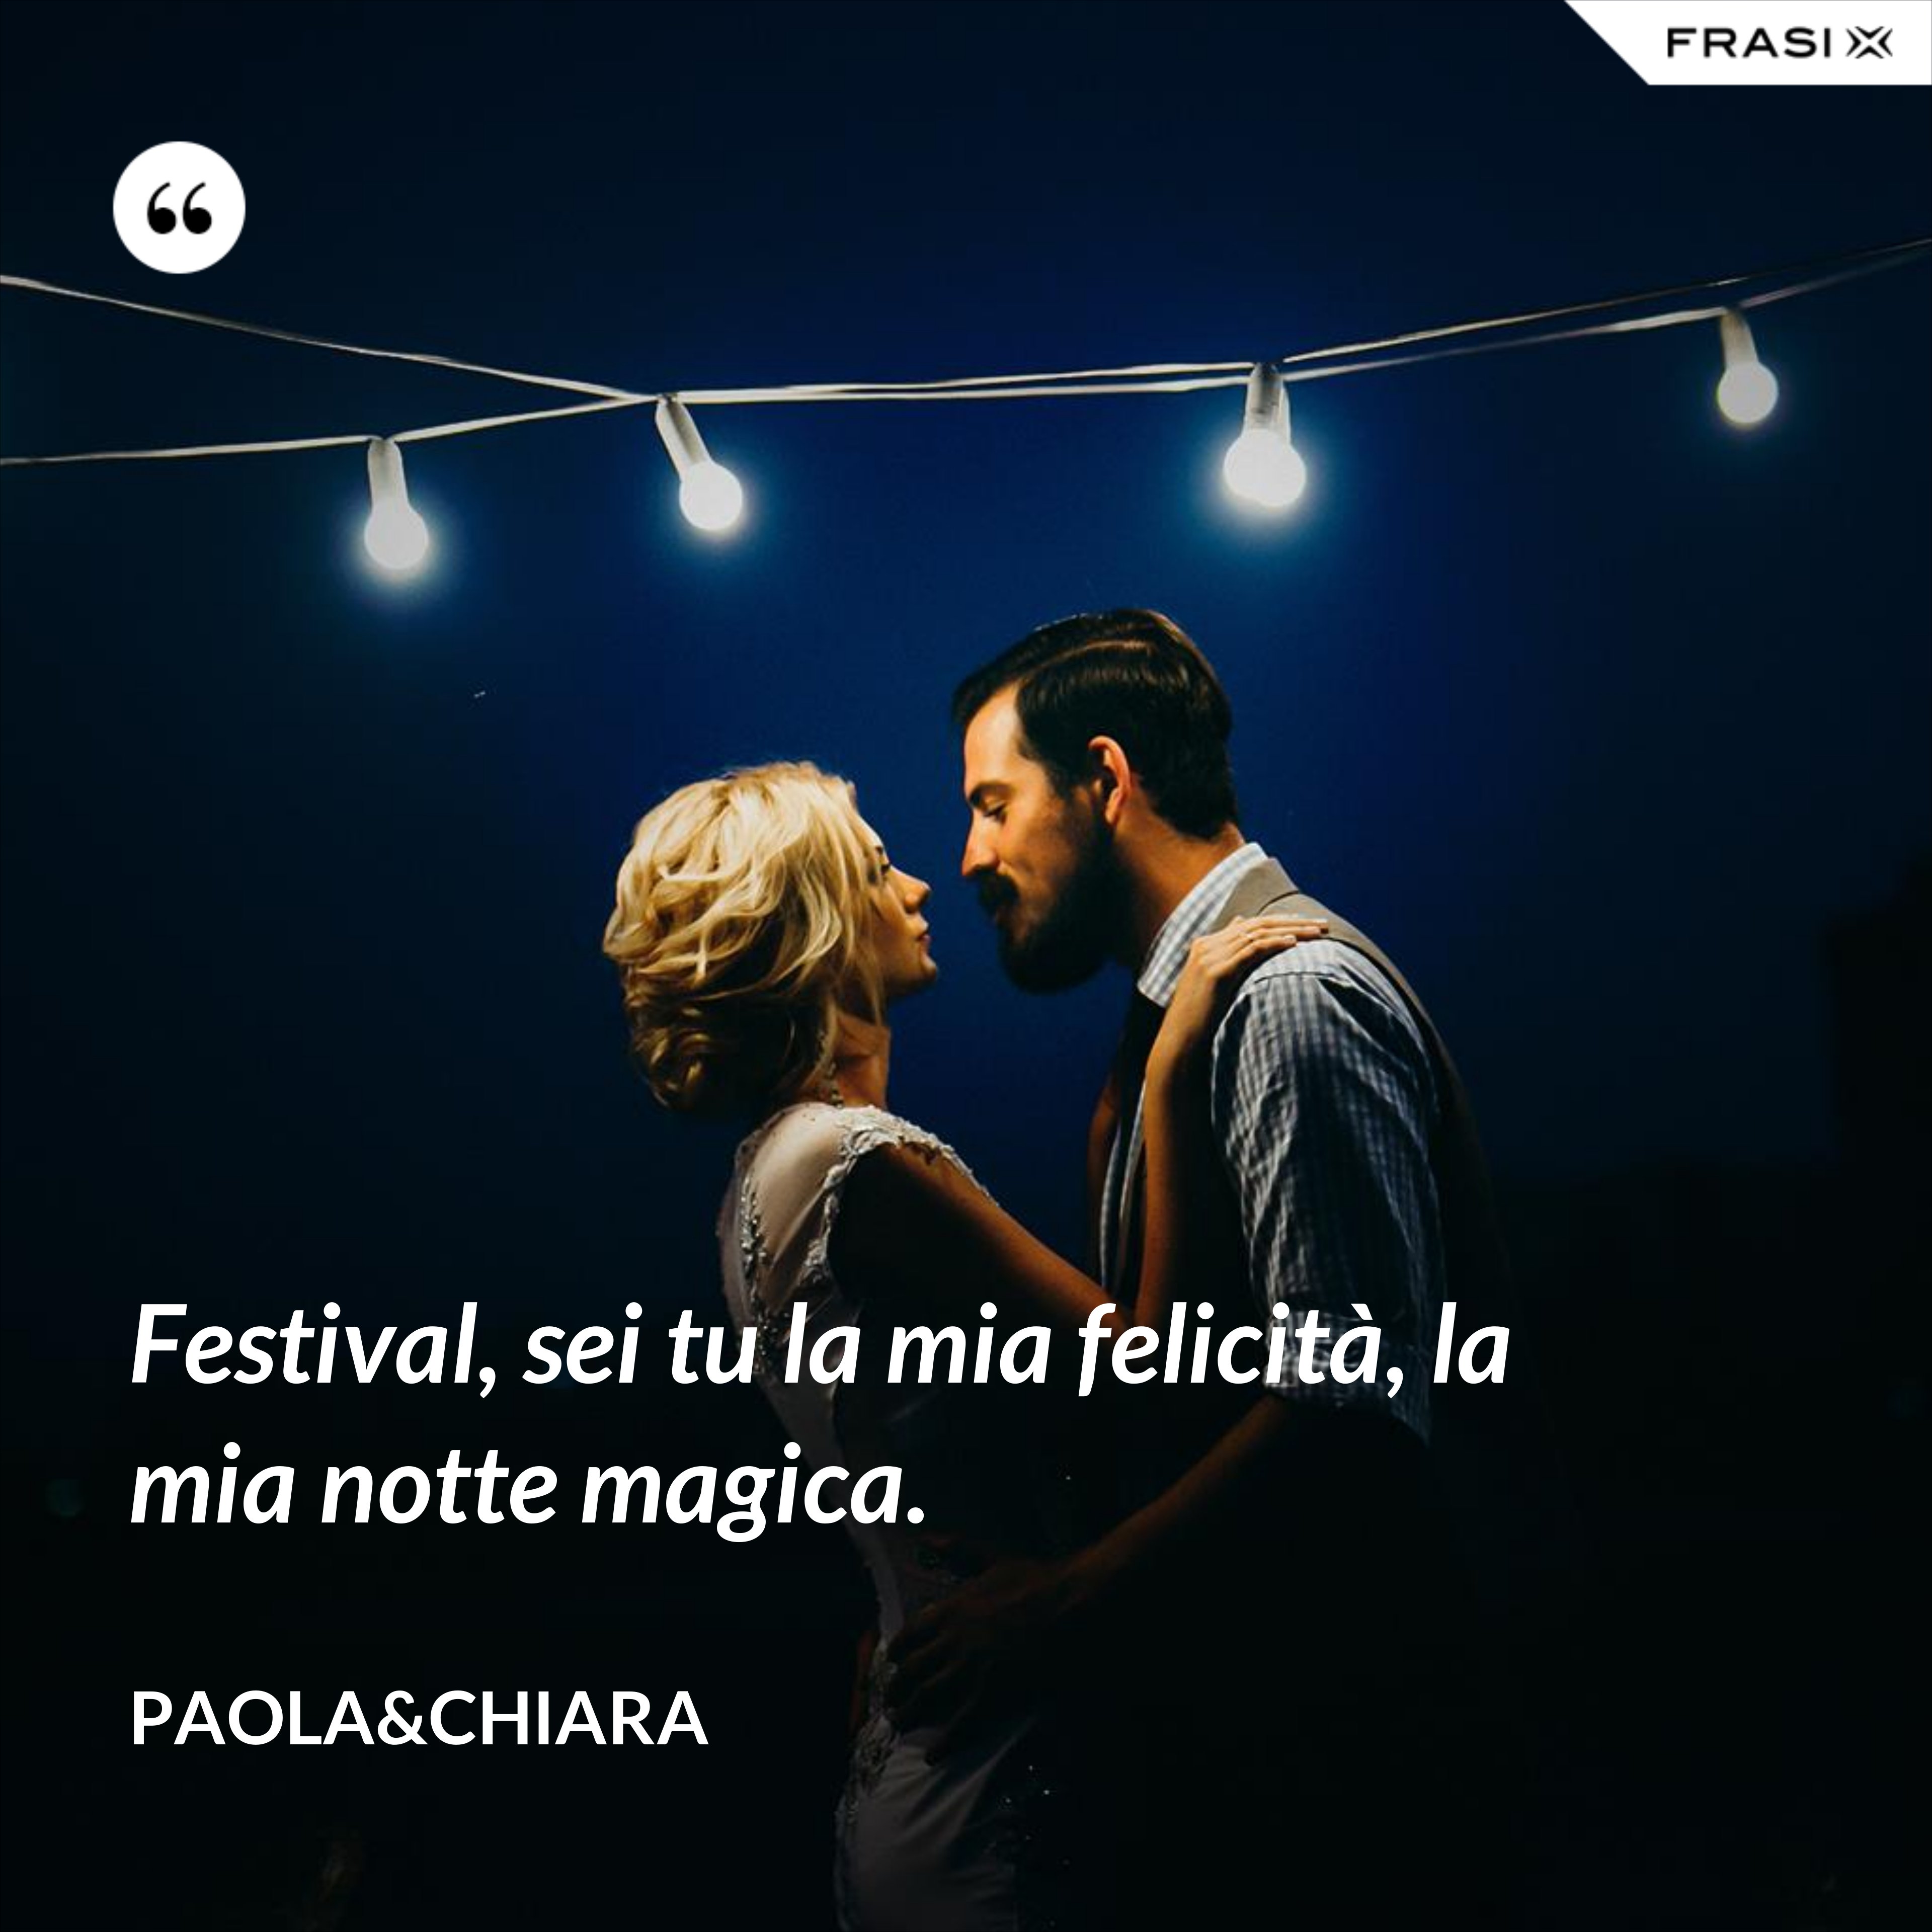 Festival, sei tu la mia felicità, la mia notte magica. - Paola&Chiara